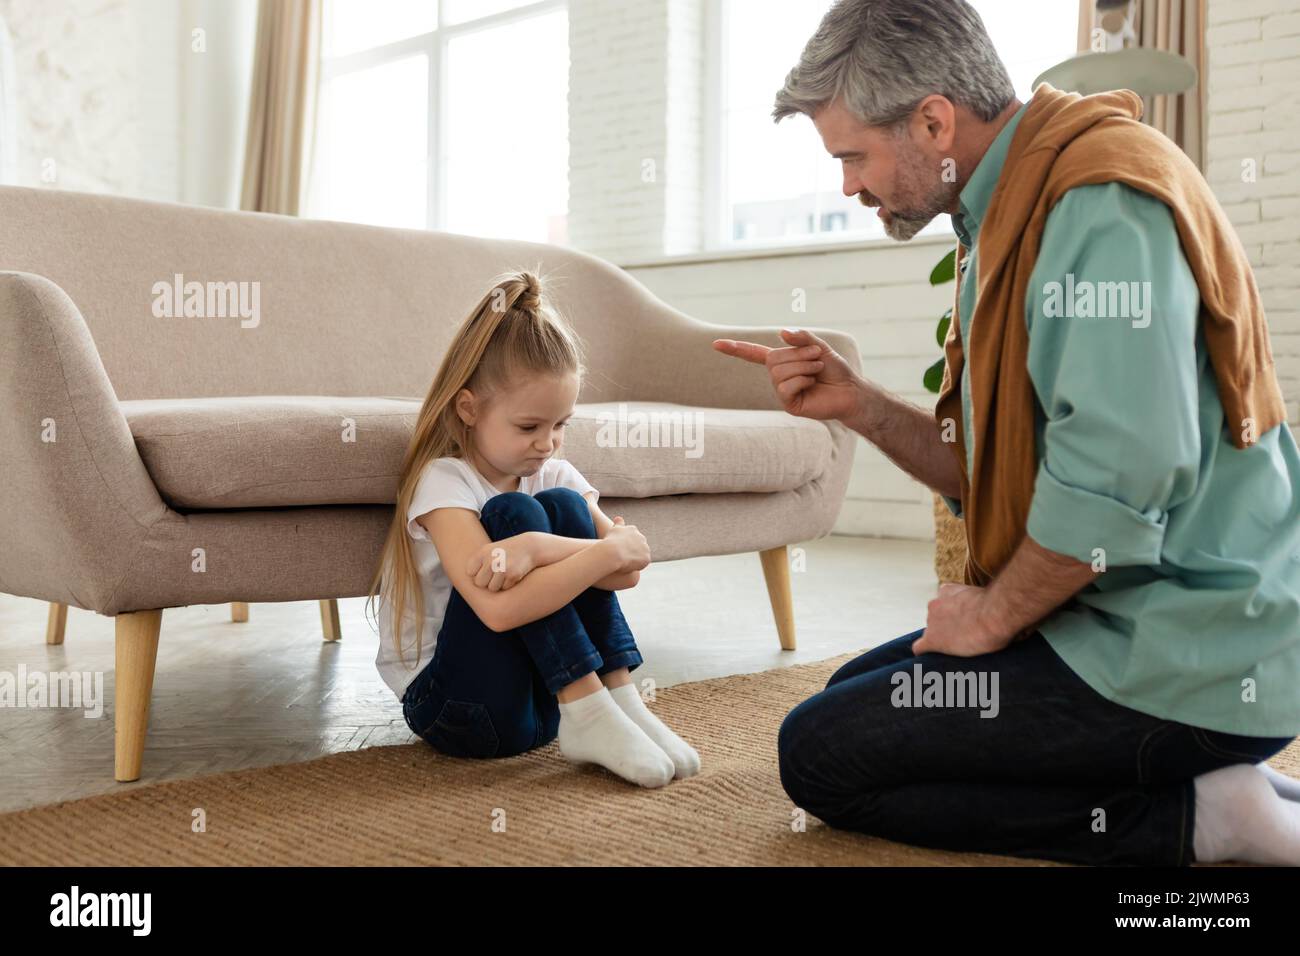 Strict papà scolding figlia minacciandola con il dito a casa Foto Stock